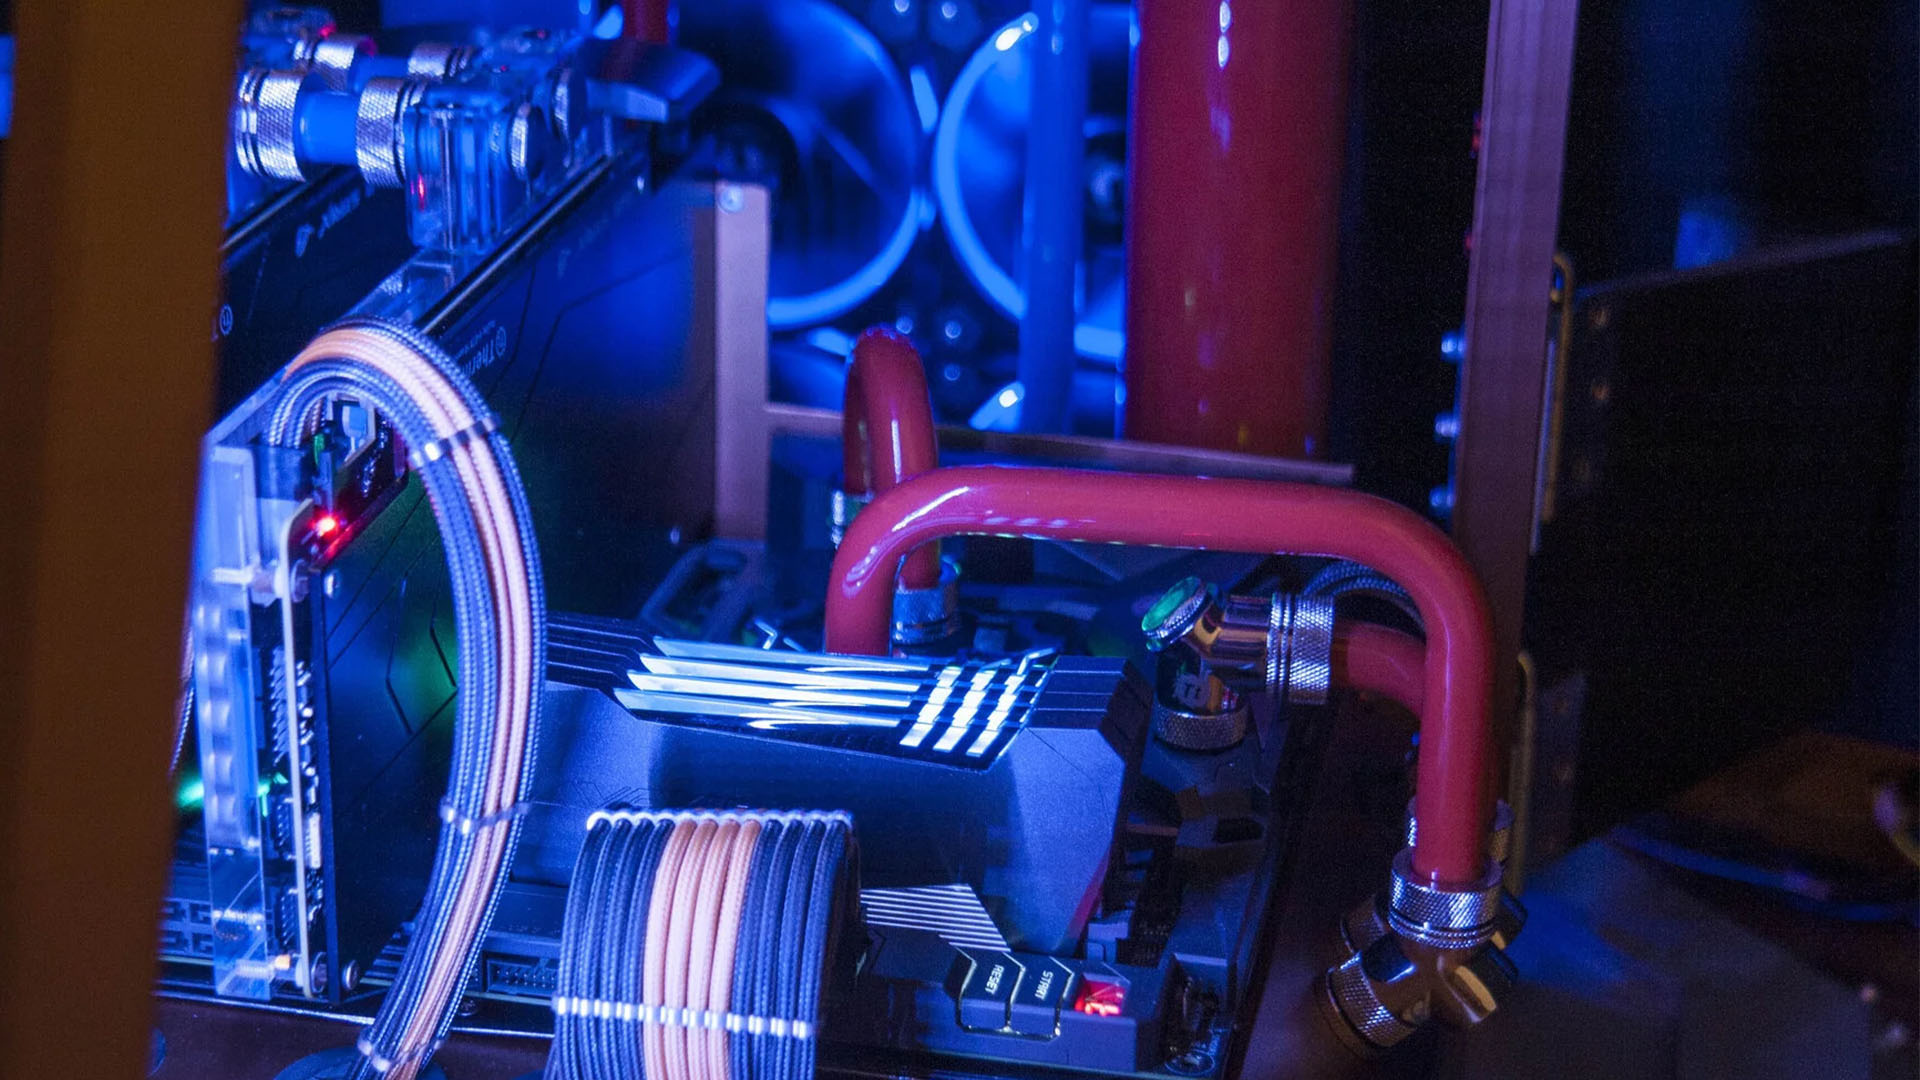 Doctor Who Dalek oyun bilgisayarı yapısı;  içeride su soğutma döngüsü